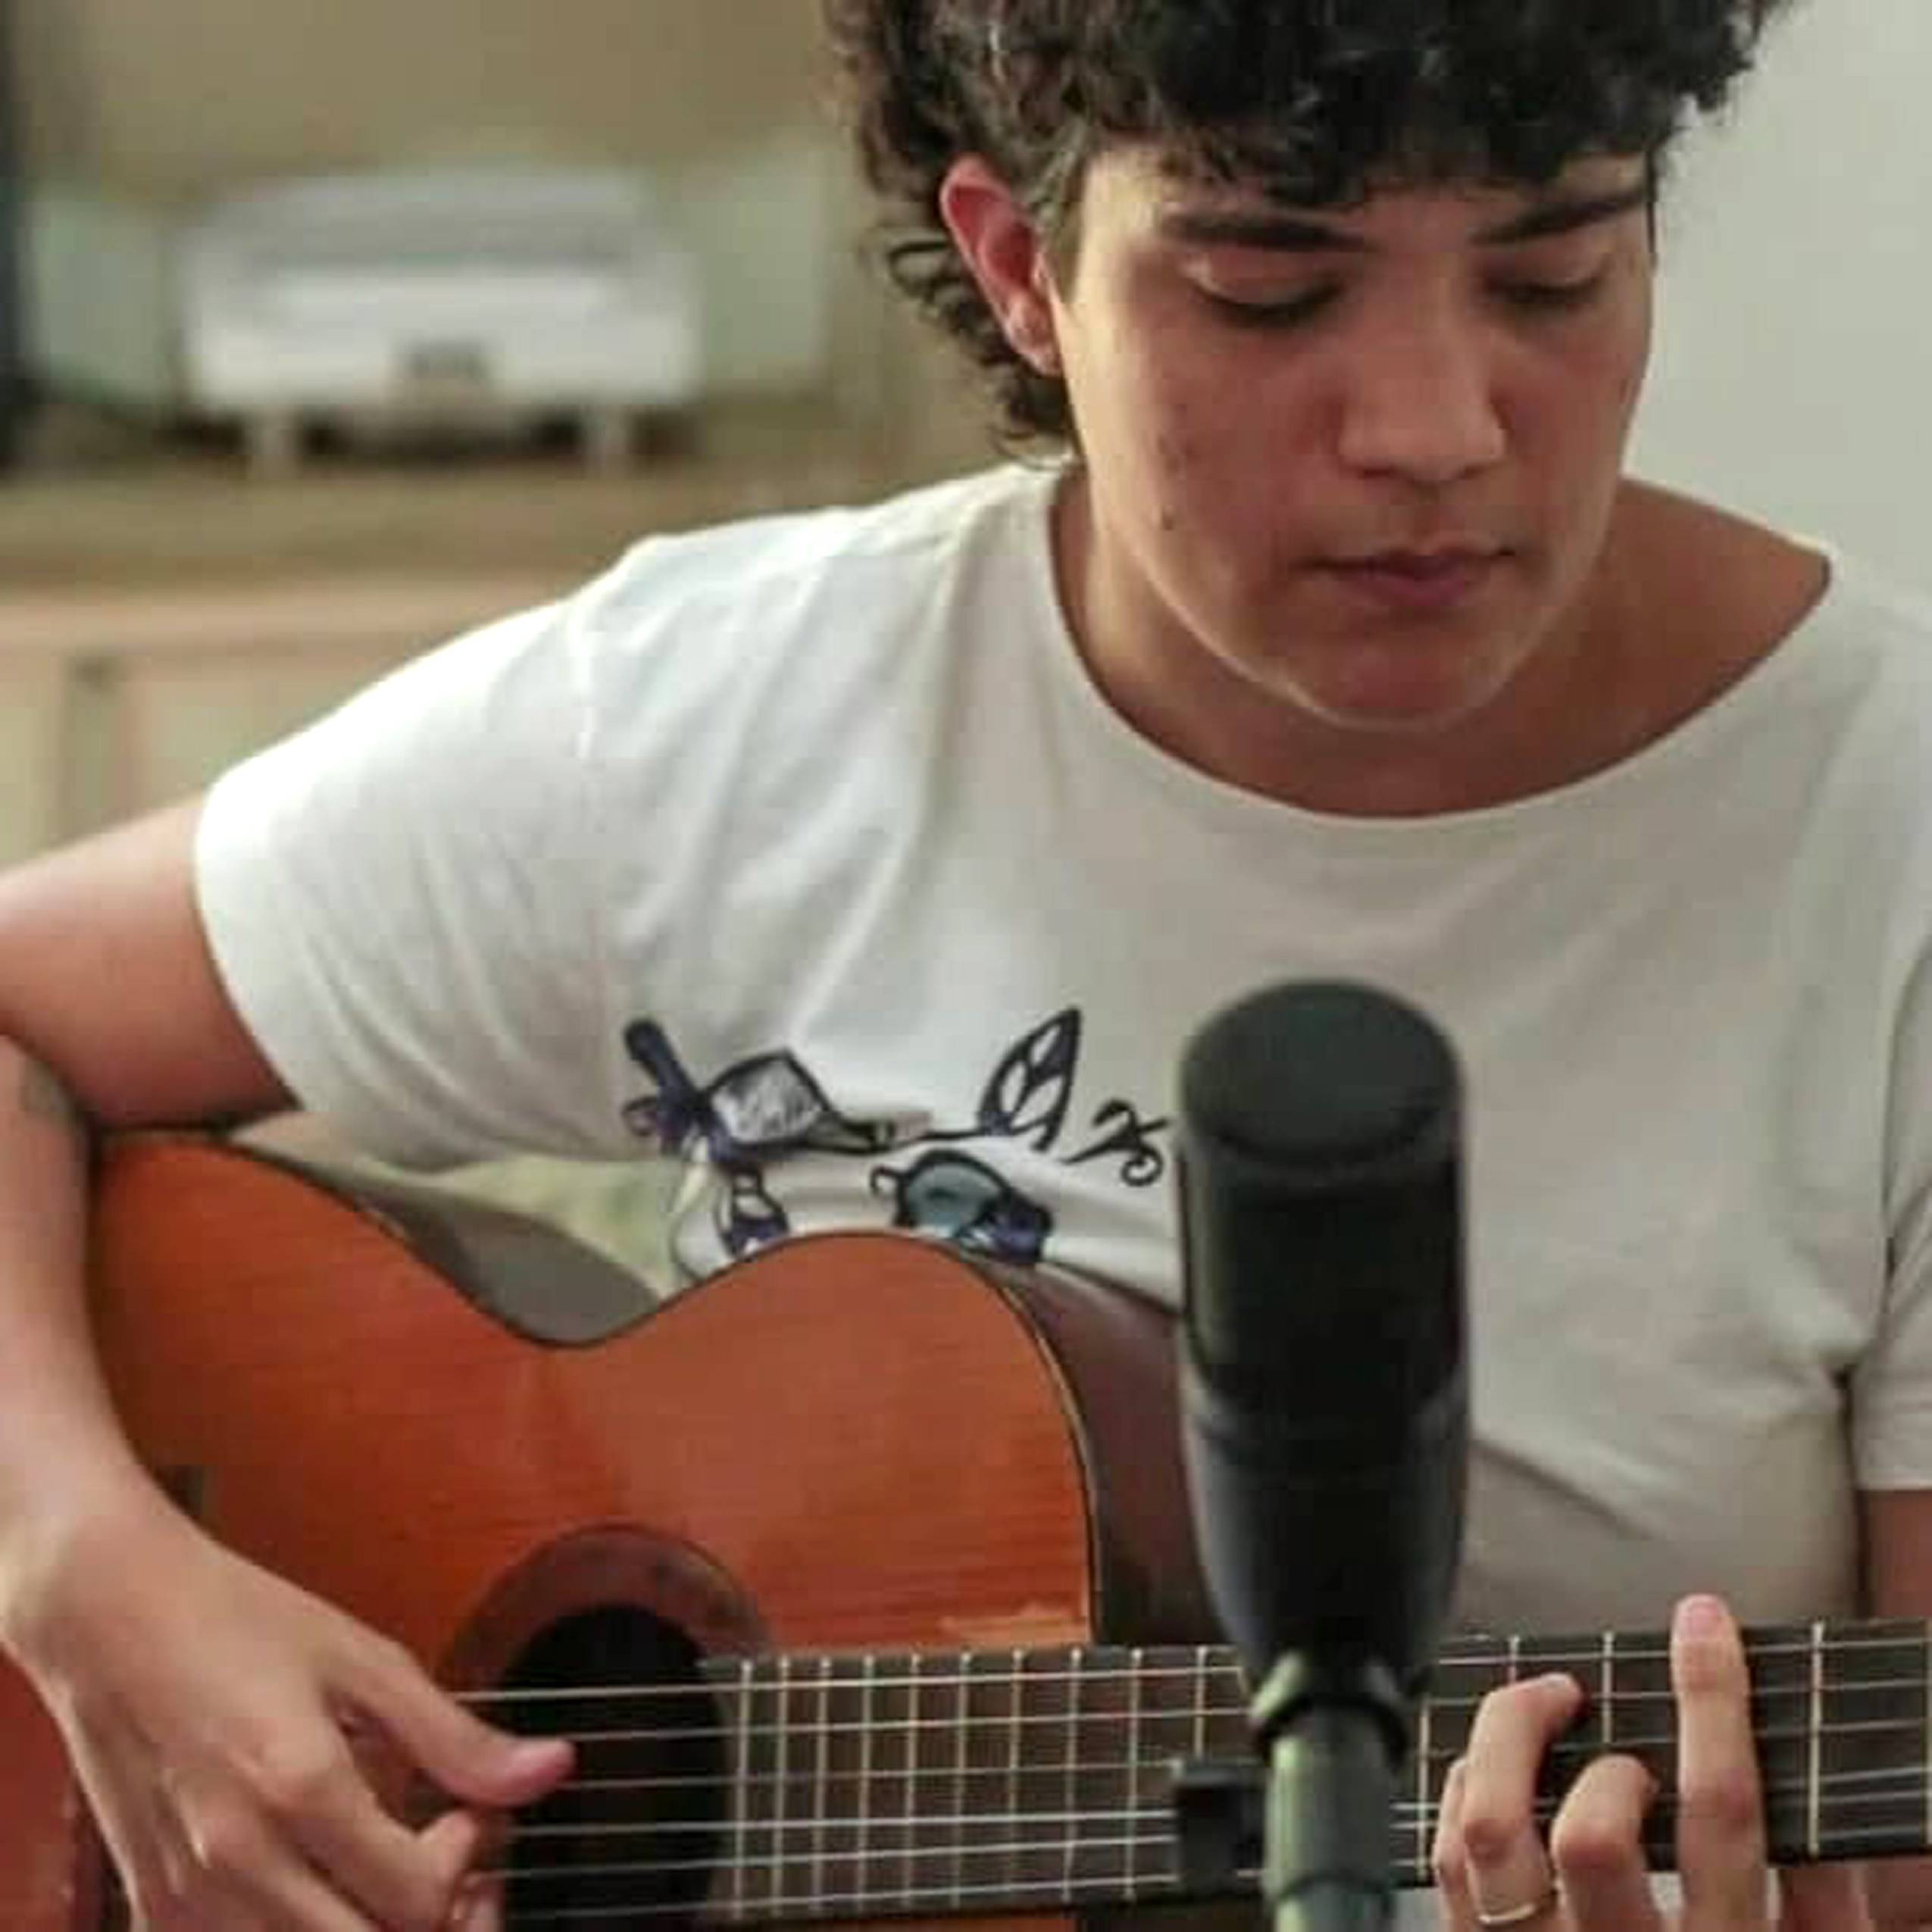 Foto de Tauana Queiroz. Com um violão nas mãos e um microfone em um tripé na frente, Tauana olha para baixo enquanto dedilha as cordas do violão. Veste uma camisa branca.